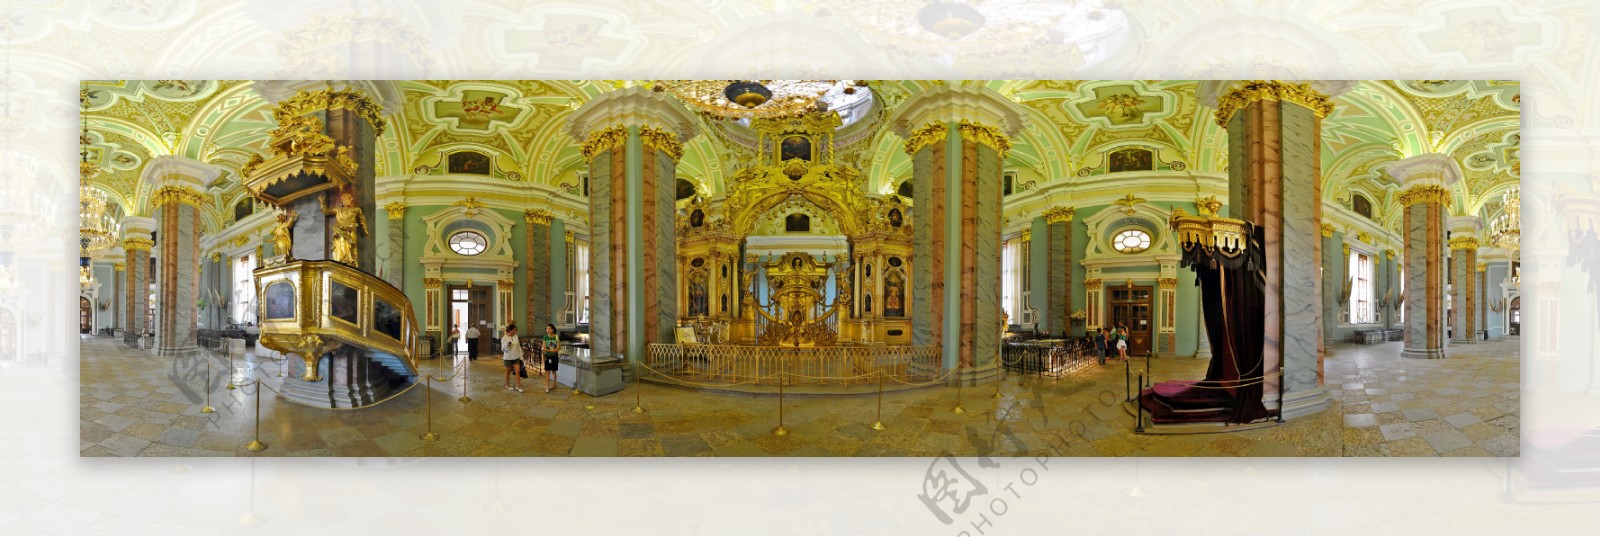 俄罗斯保罗大教堂图片